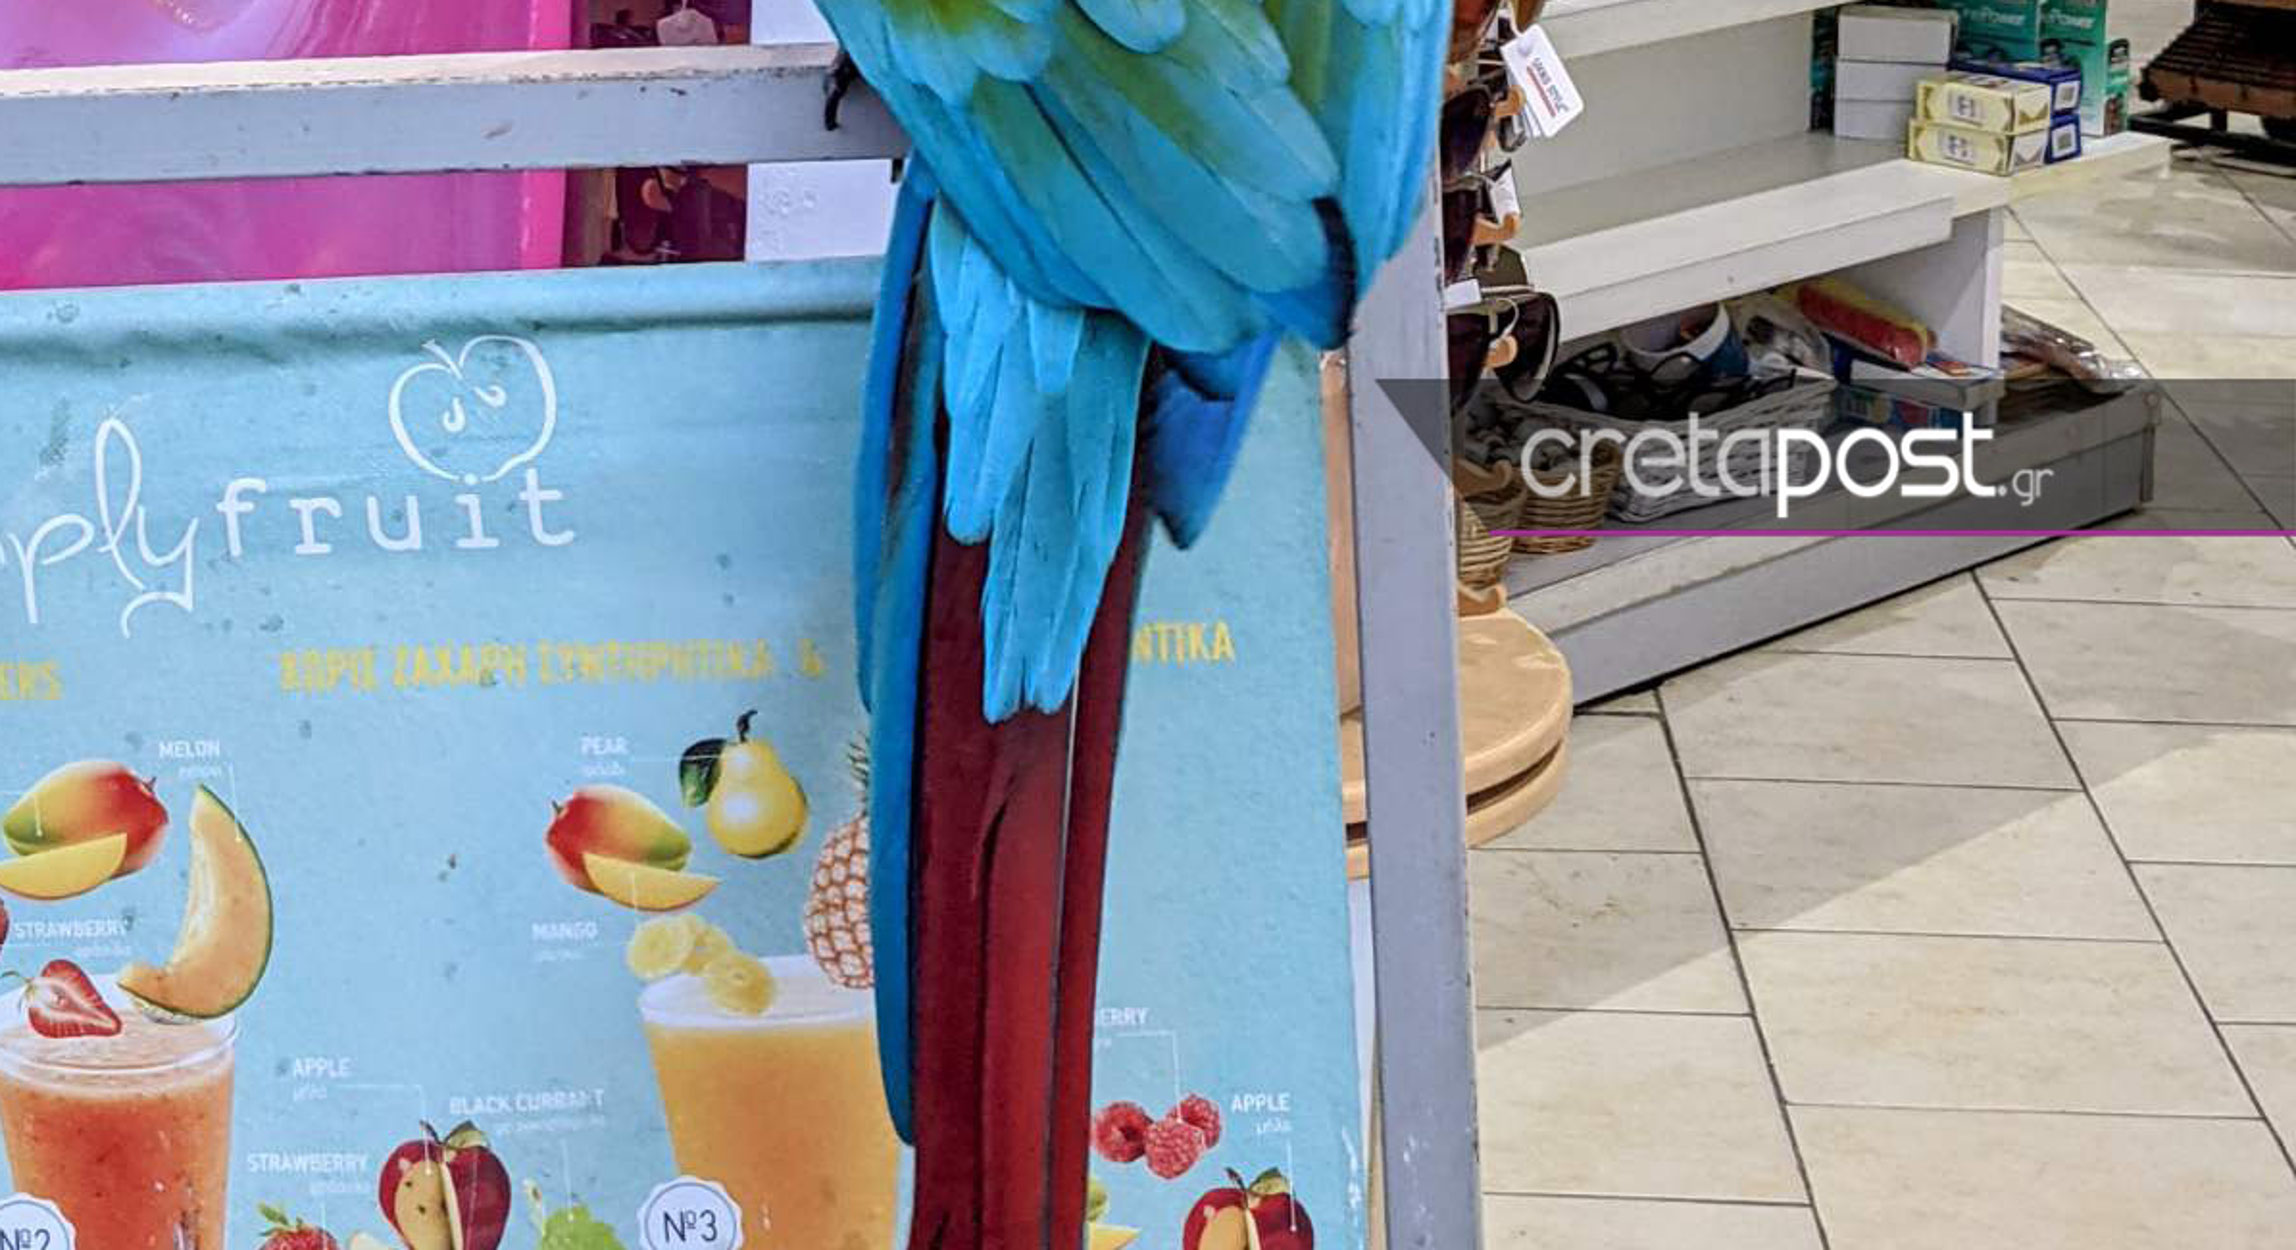 Ηράκλειο: Εξωτικό πουλί στις Γούβες τραβά όλα τα βλέμματα